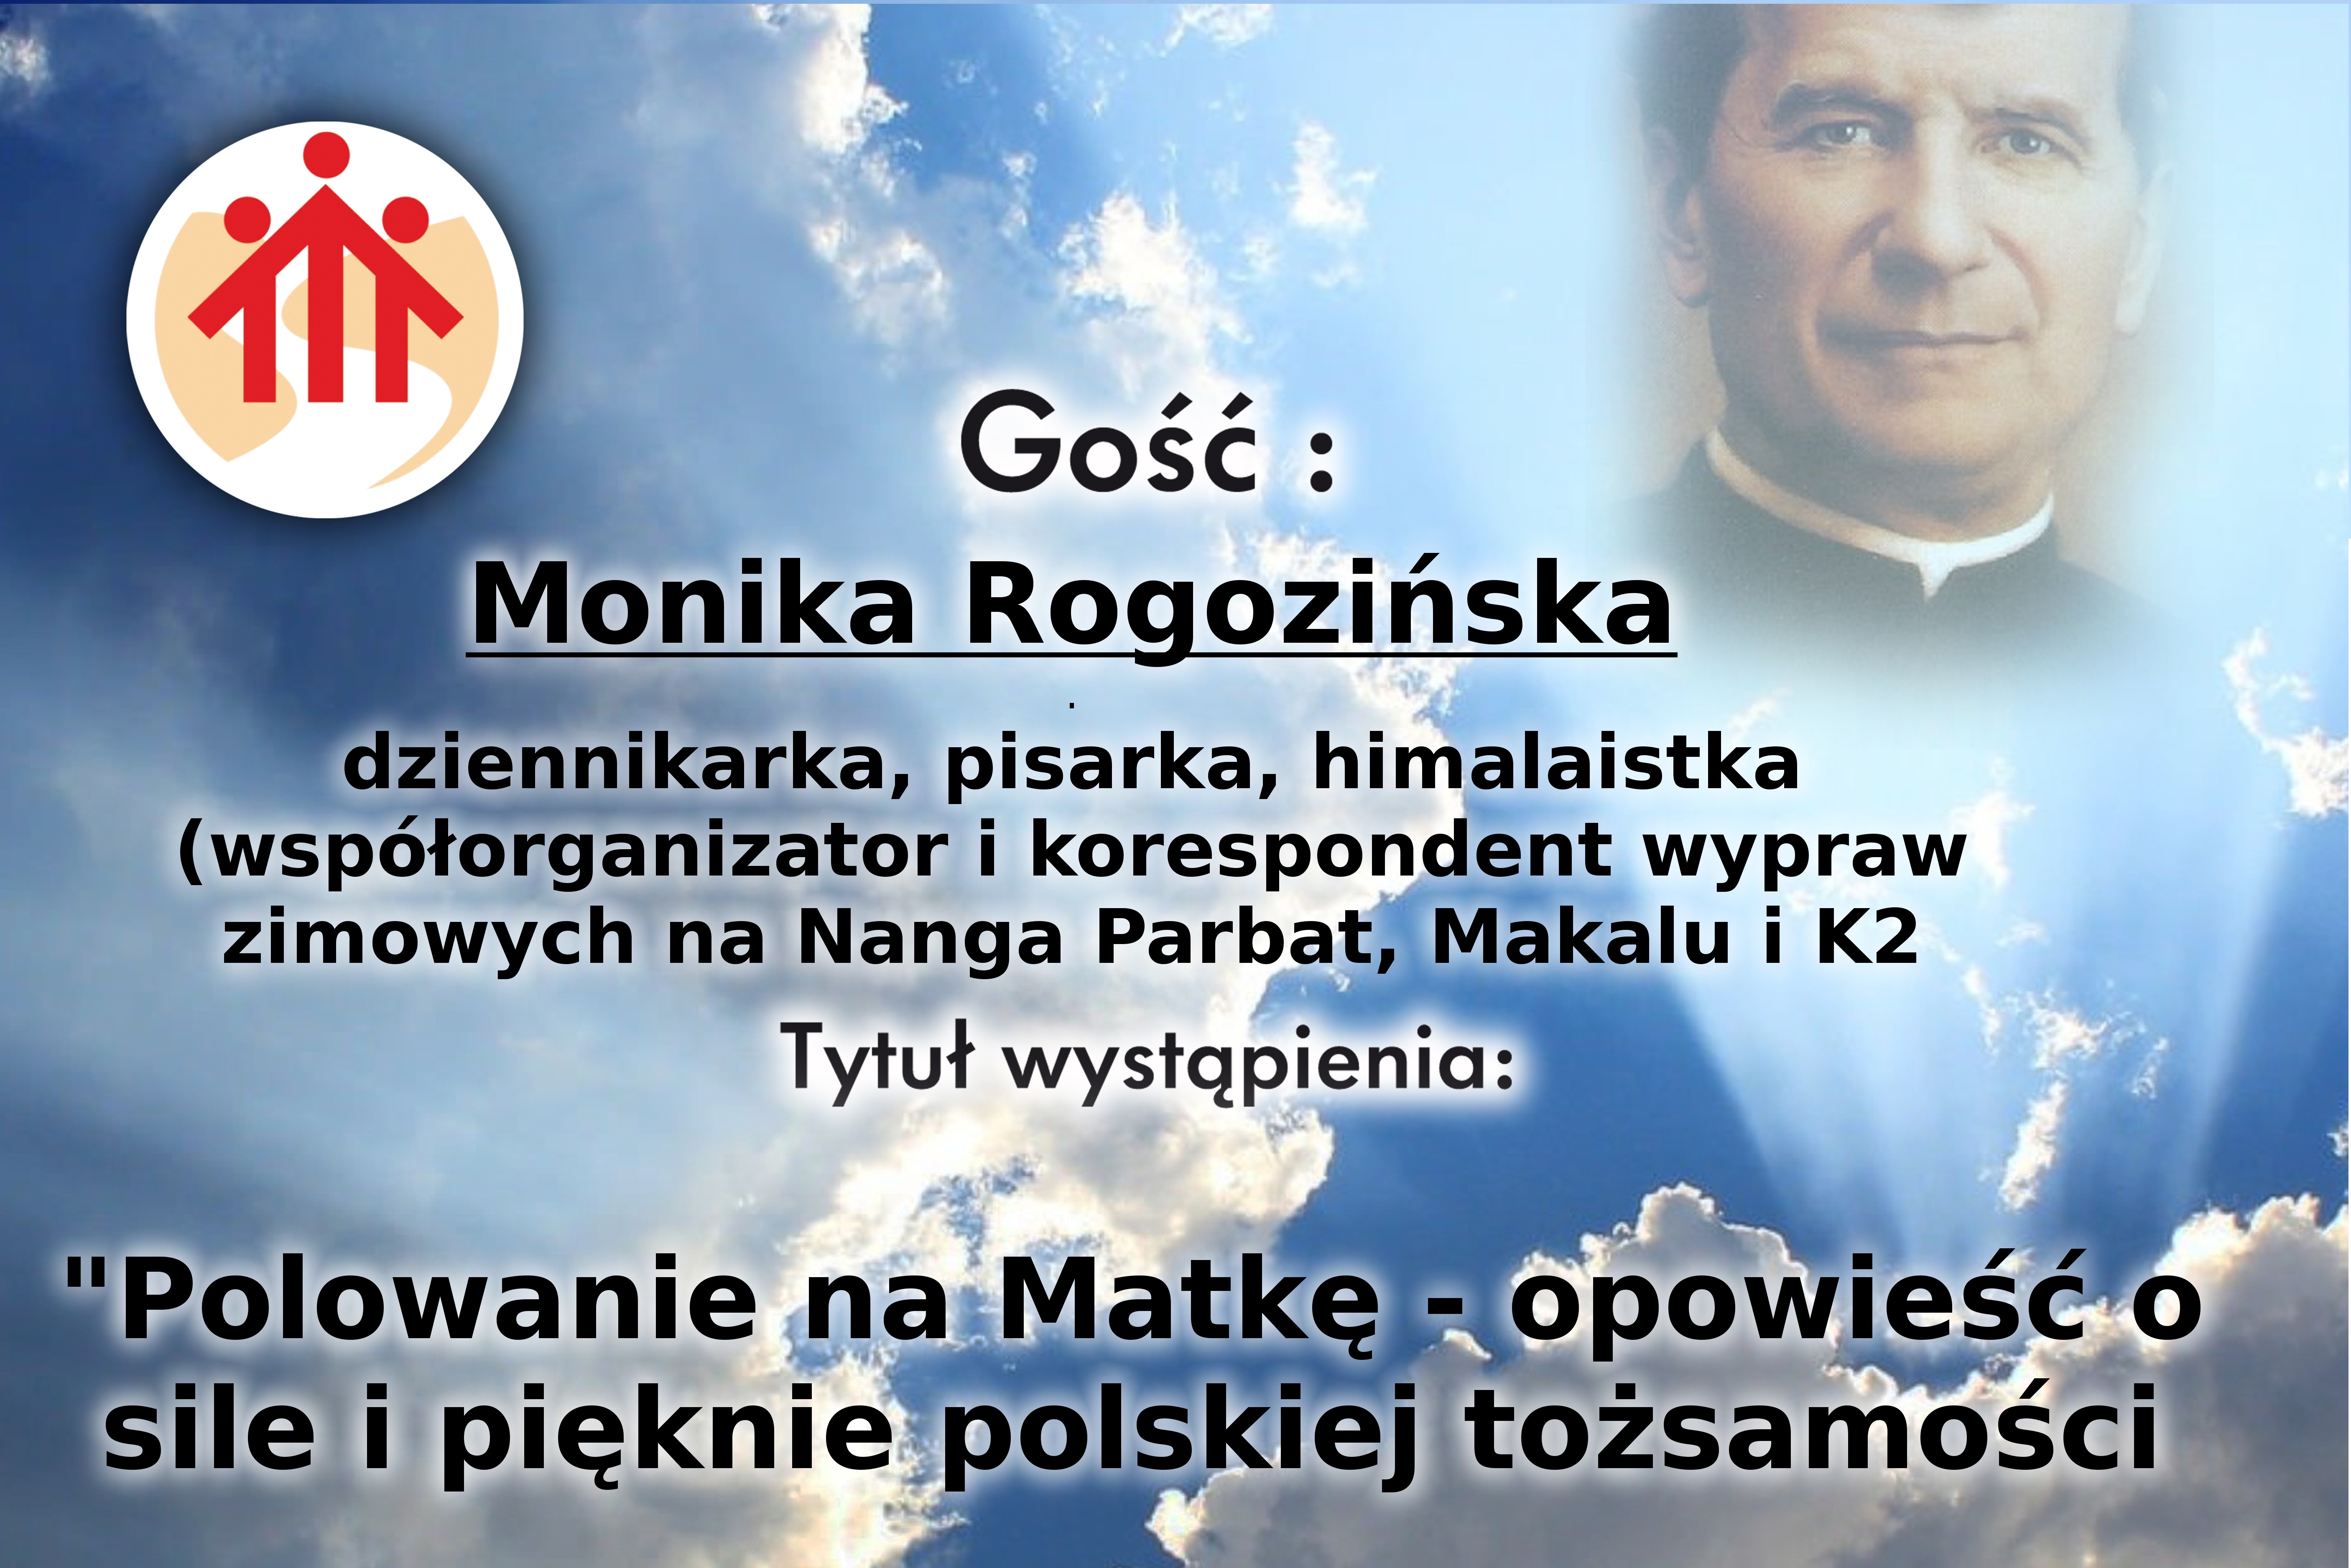 O sile polskiego narodu opowie w kościele